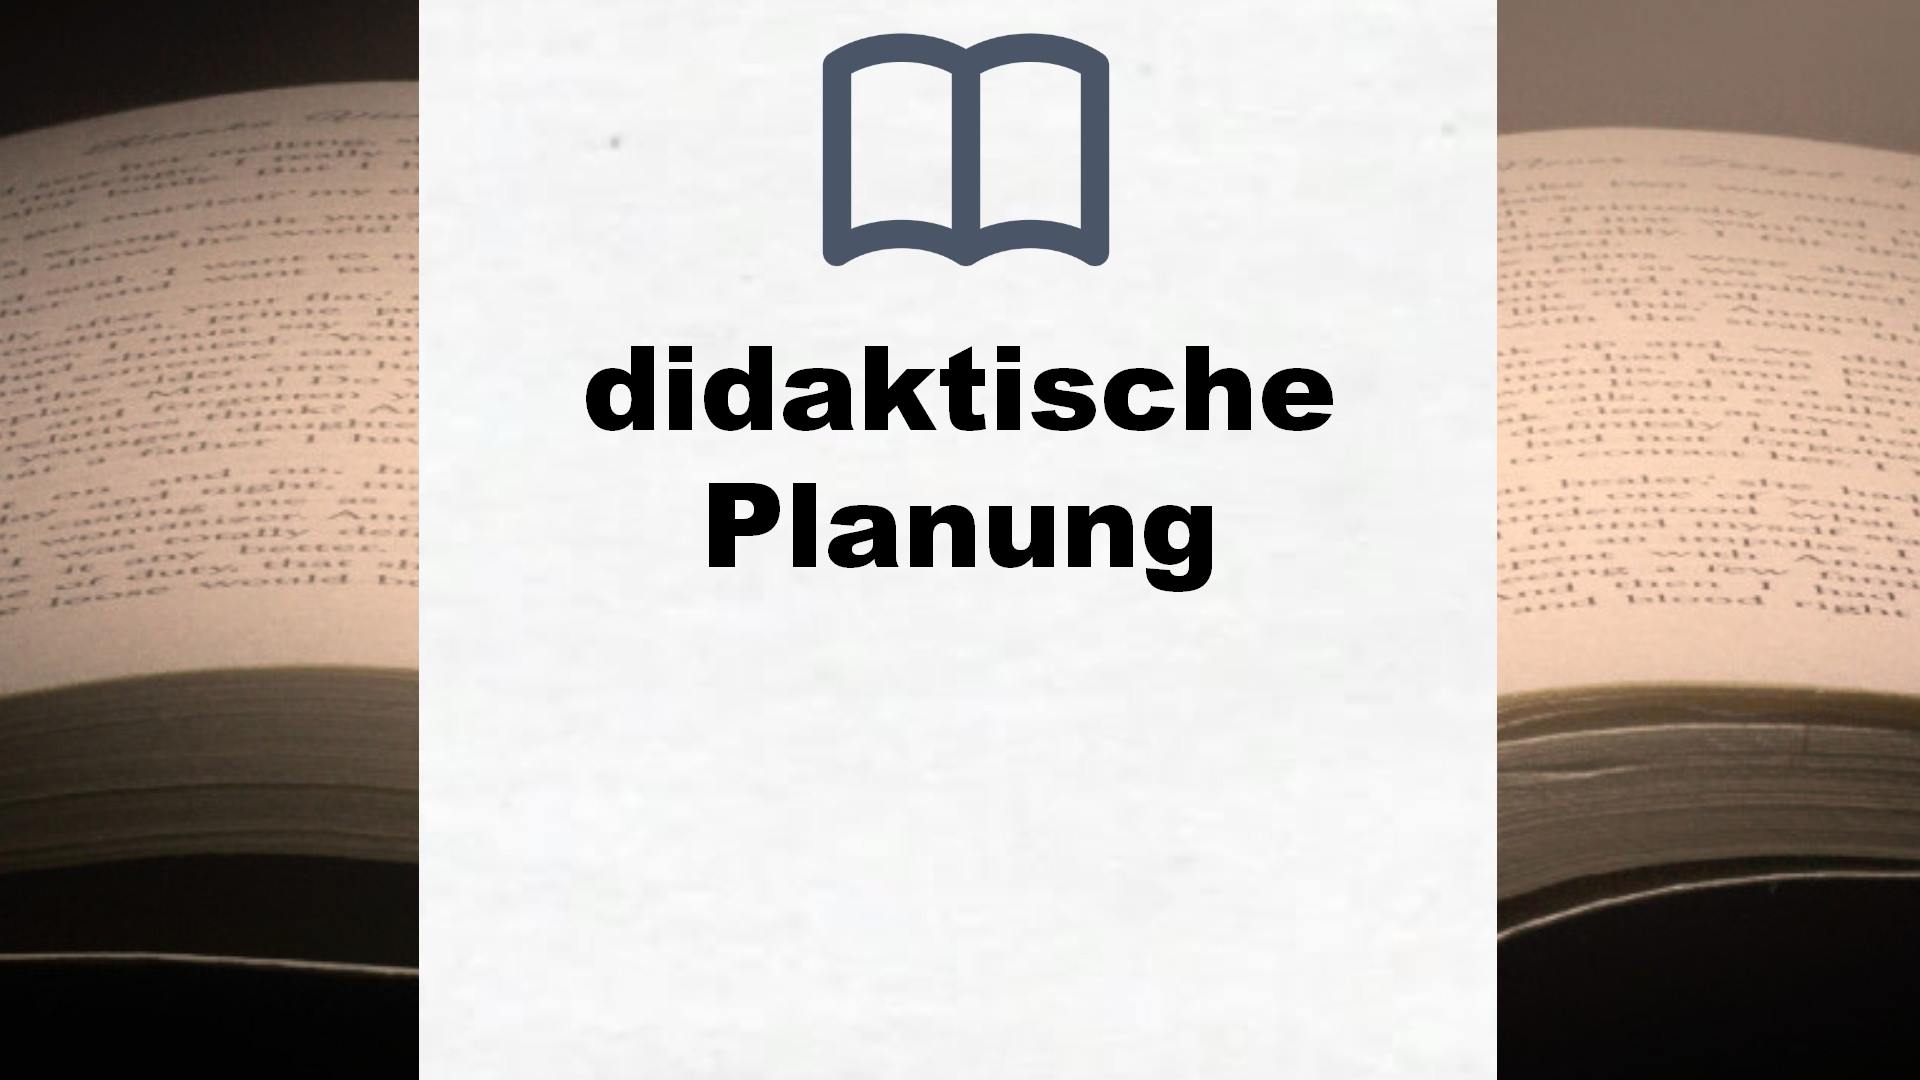 Bücher über didaktische Planung